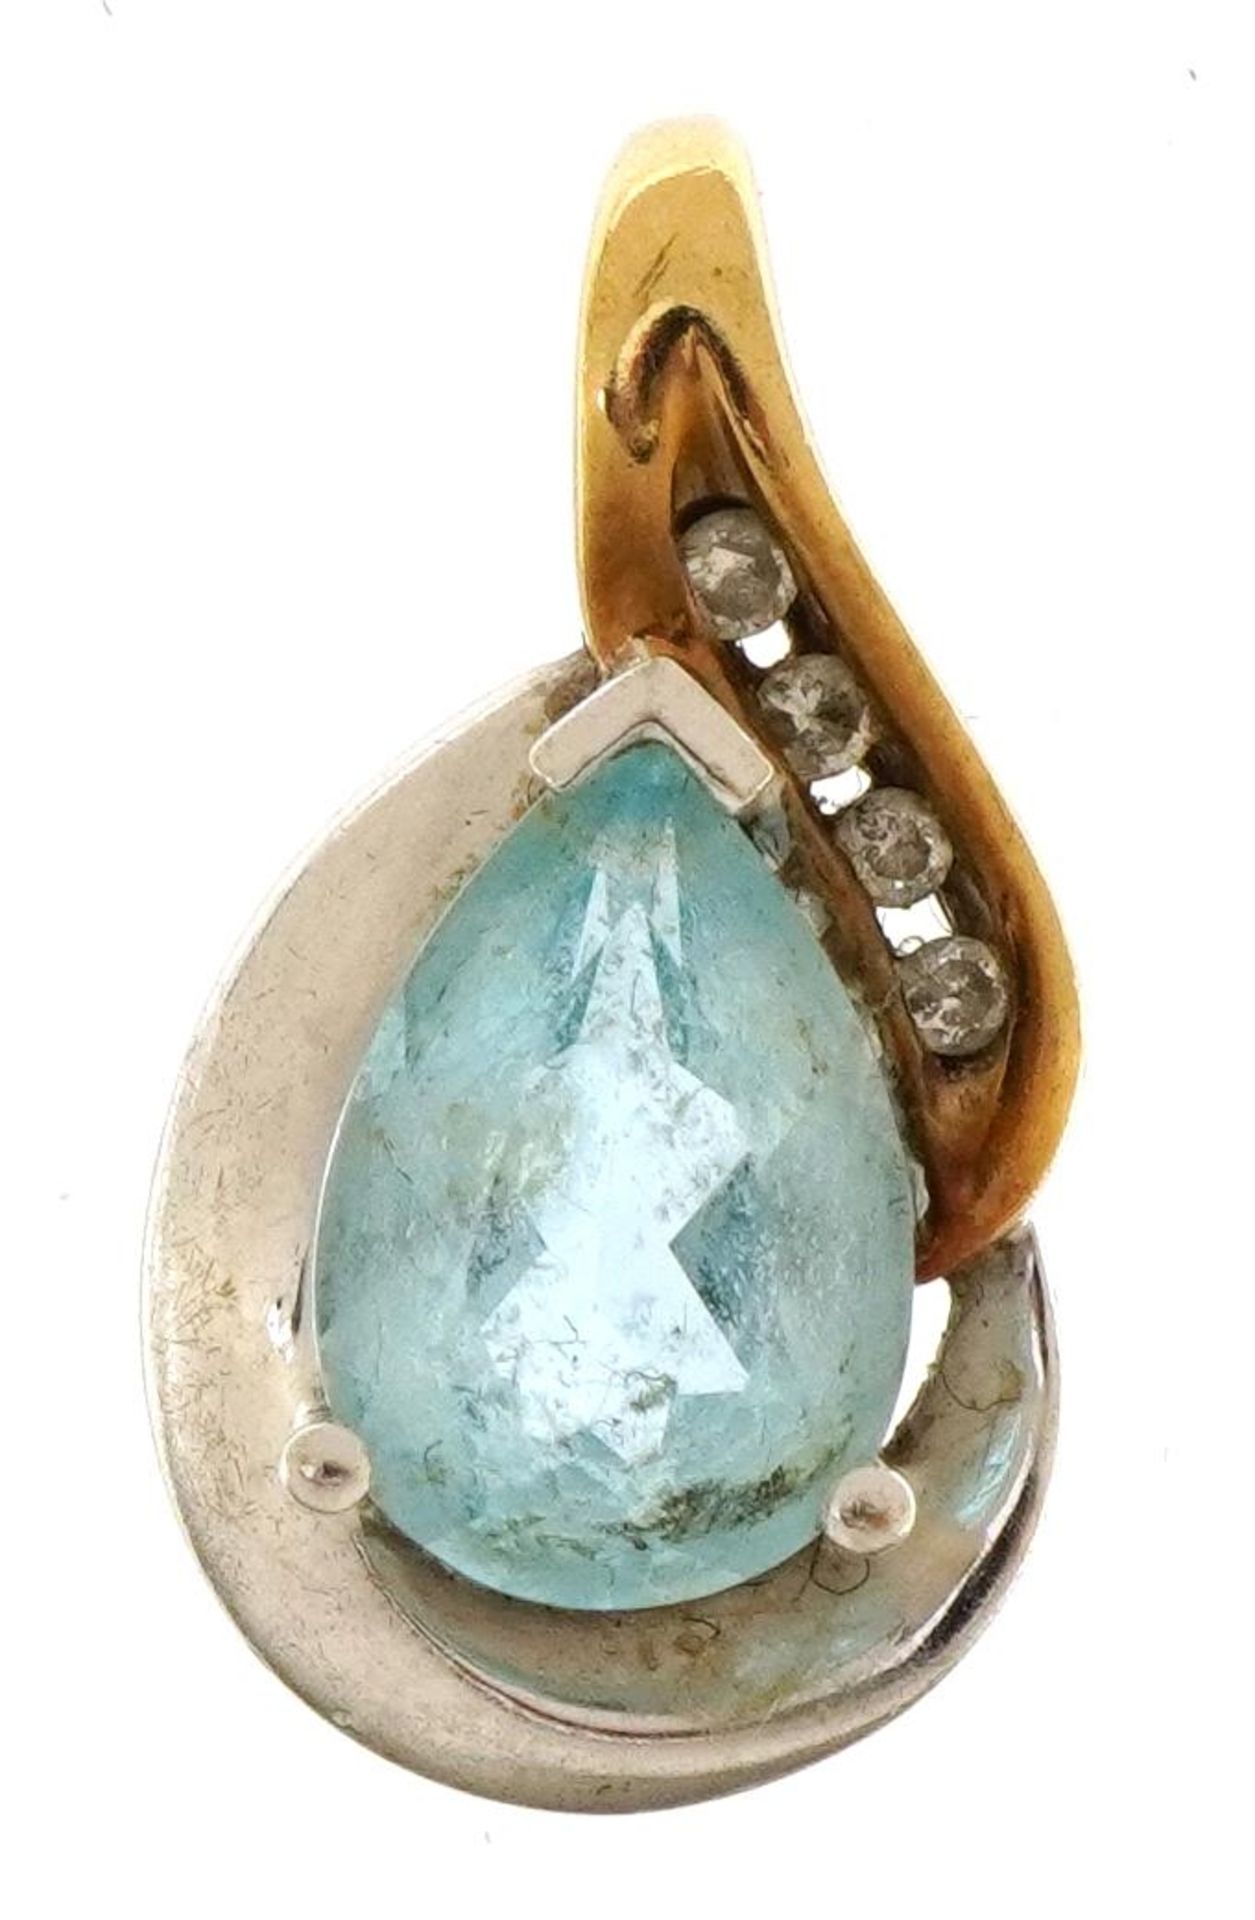 9ct gold blue topaz tear drop pendant set with four diamonds, 2.0cm high, 2.4g